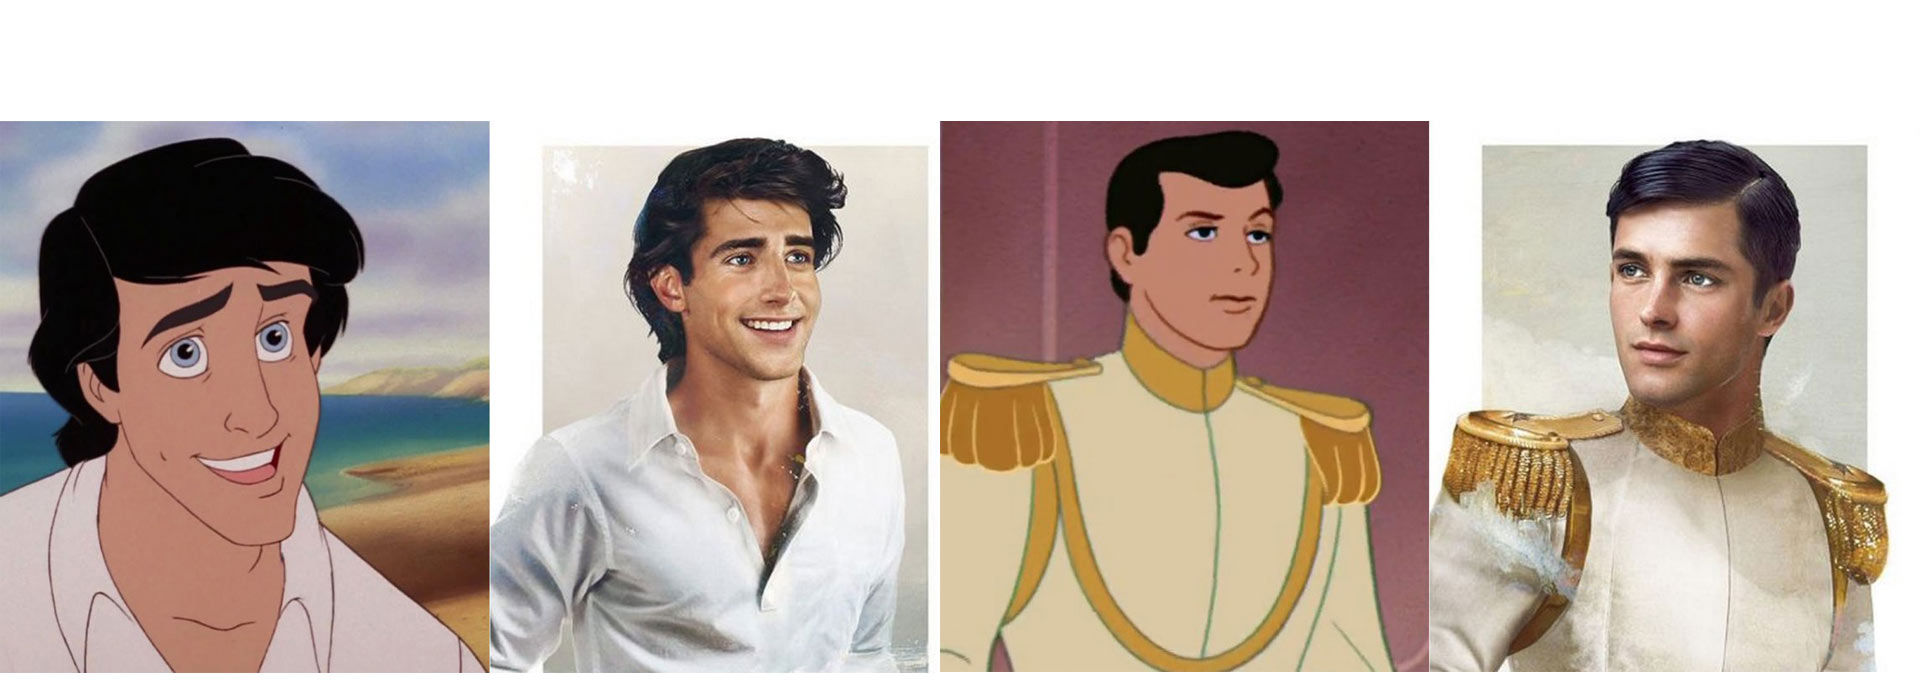 ¿Te imaginas cómo serían los príncipes de las películas de Disney en la vida real? No hace falta: aquí están las imágenes